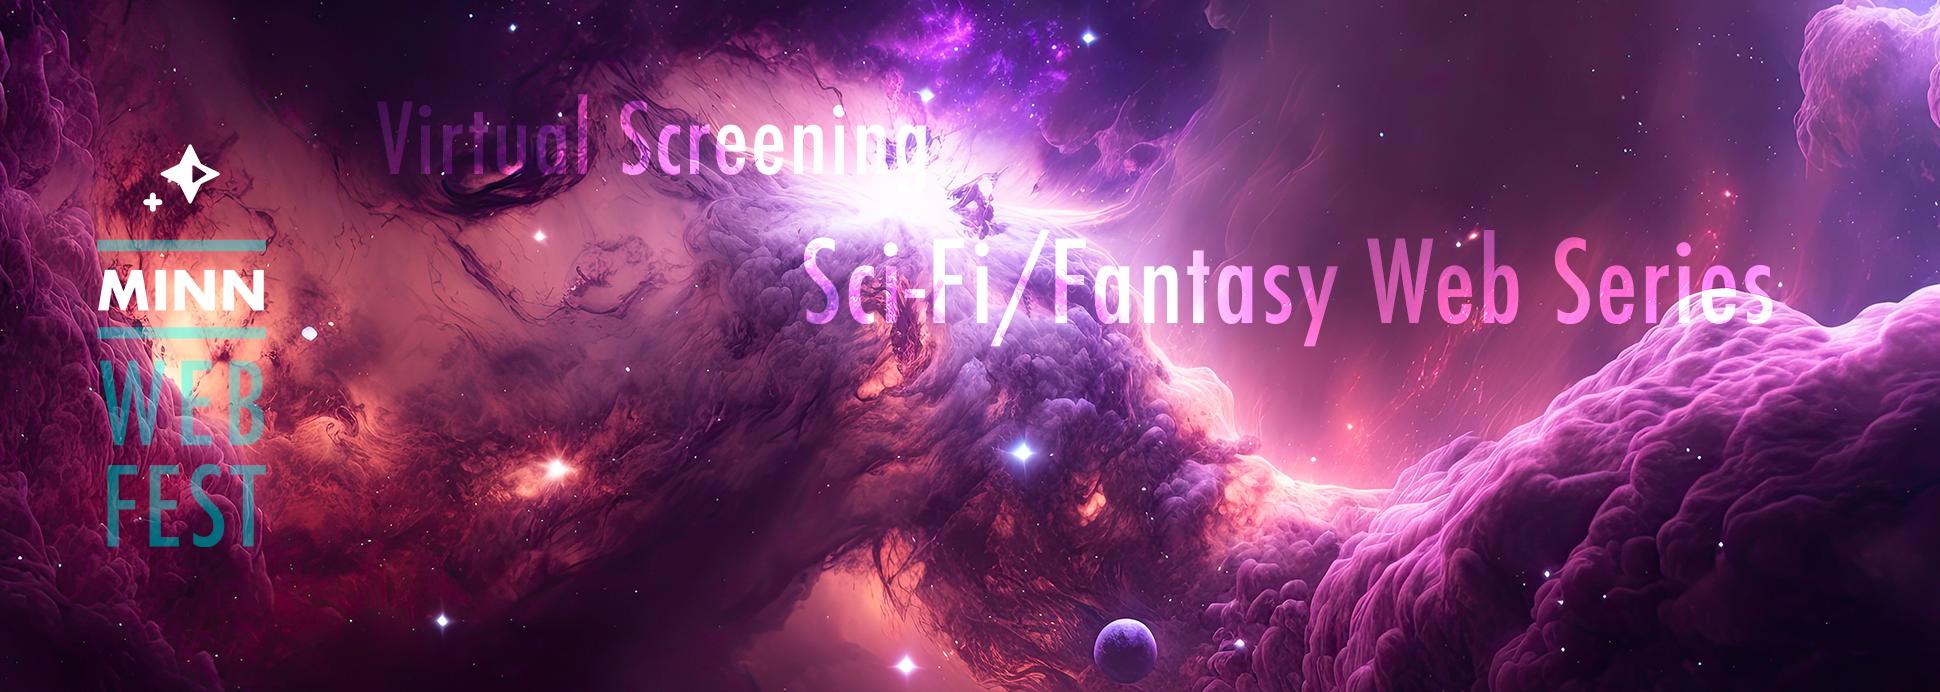 Sci-Fi/Fantasy Web Series